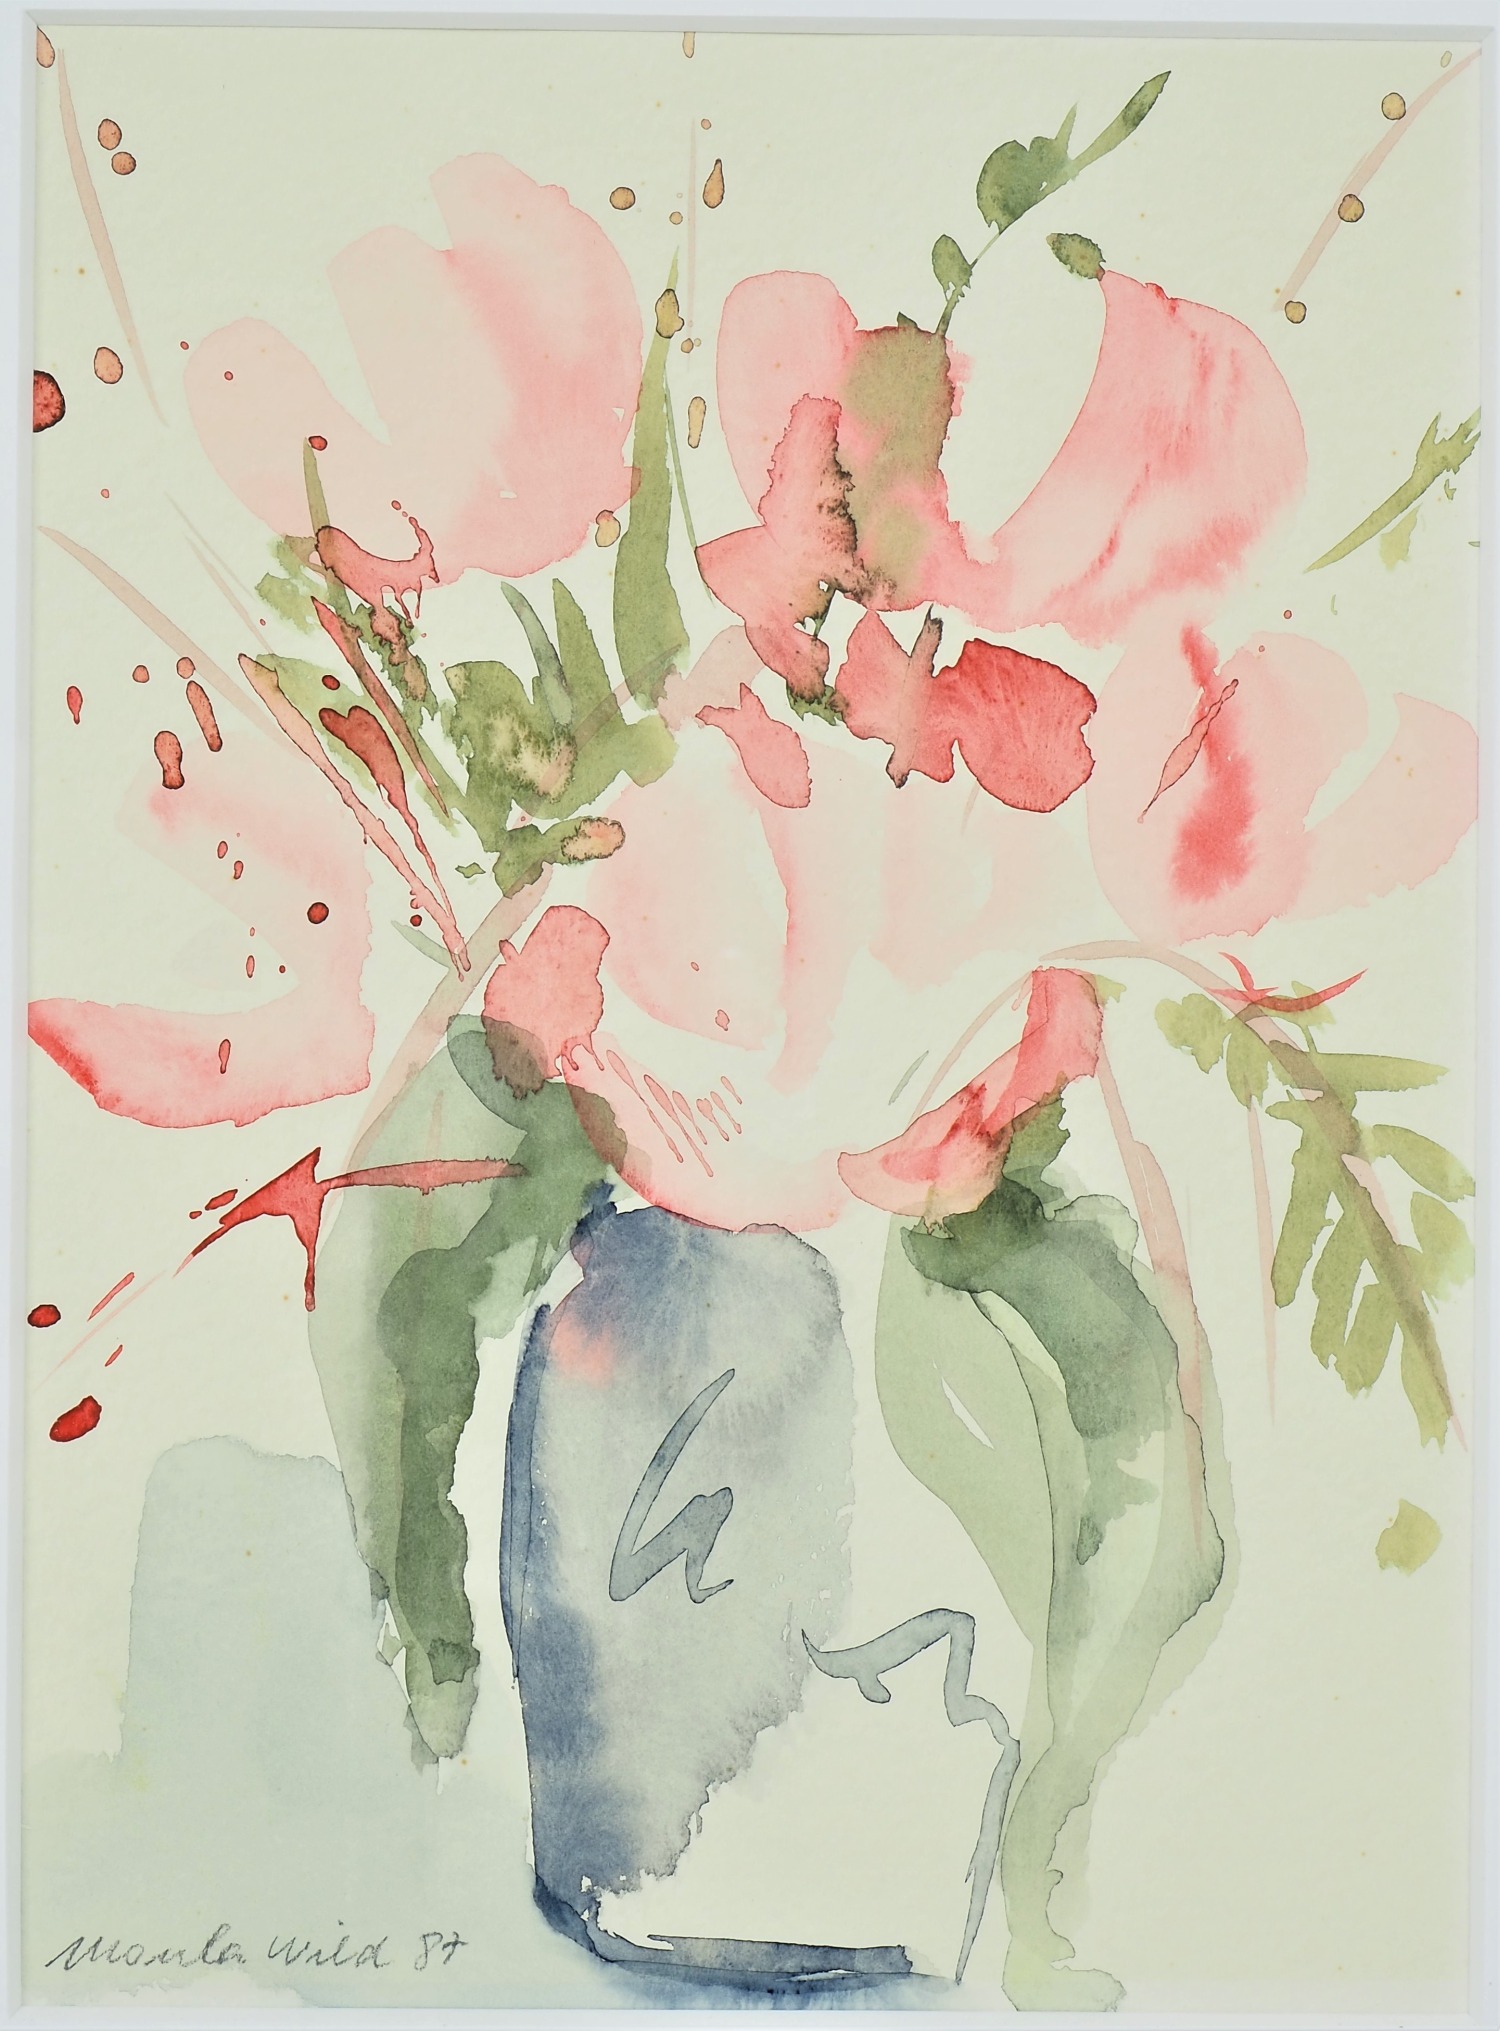 Ursula Wild (*1942, Munich) - watercolor floral still life.